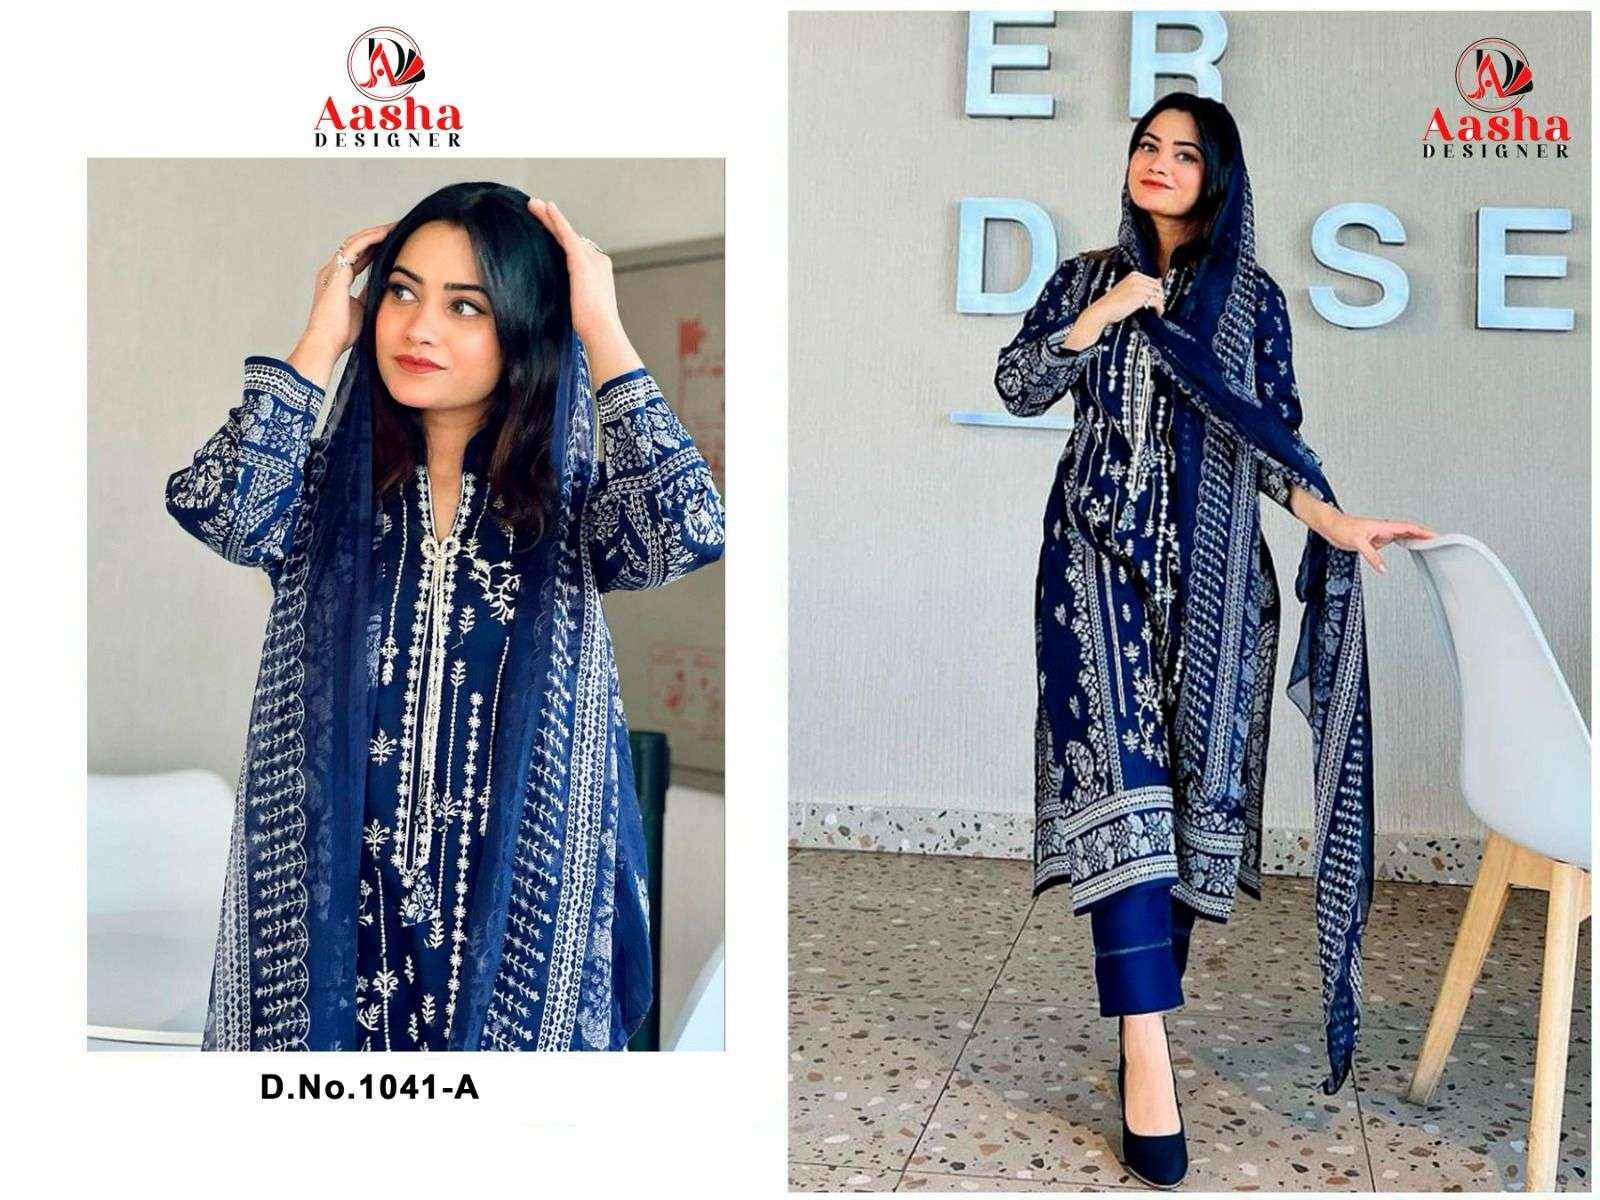 Aasha Designer Harsha Vol 2 Cotton Dress Material 2 pcs Catalogue